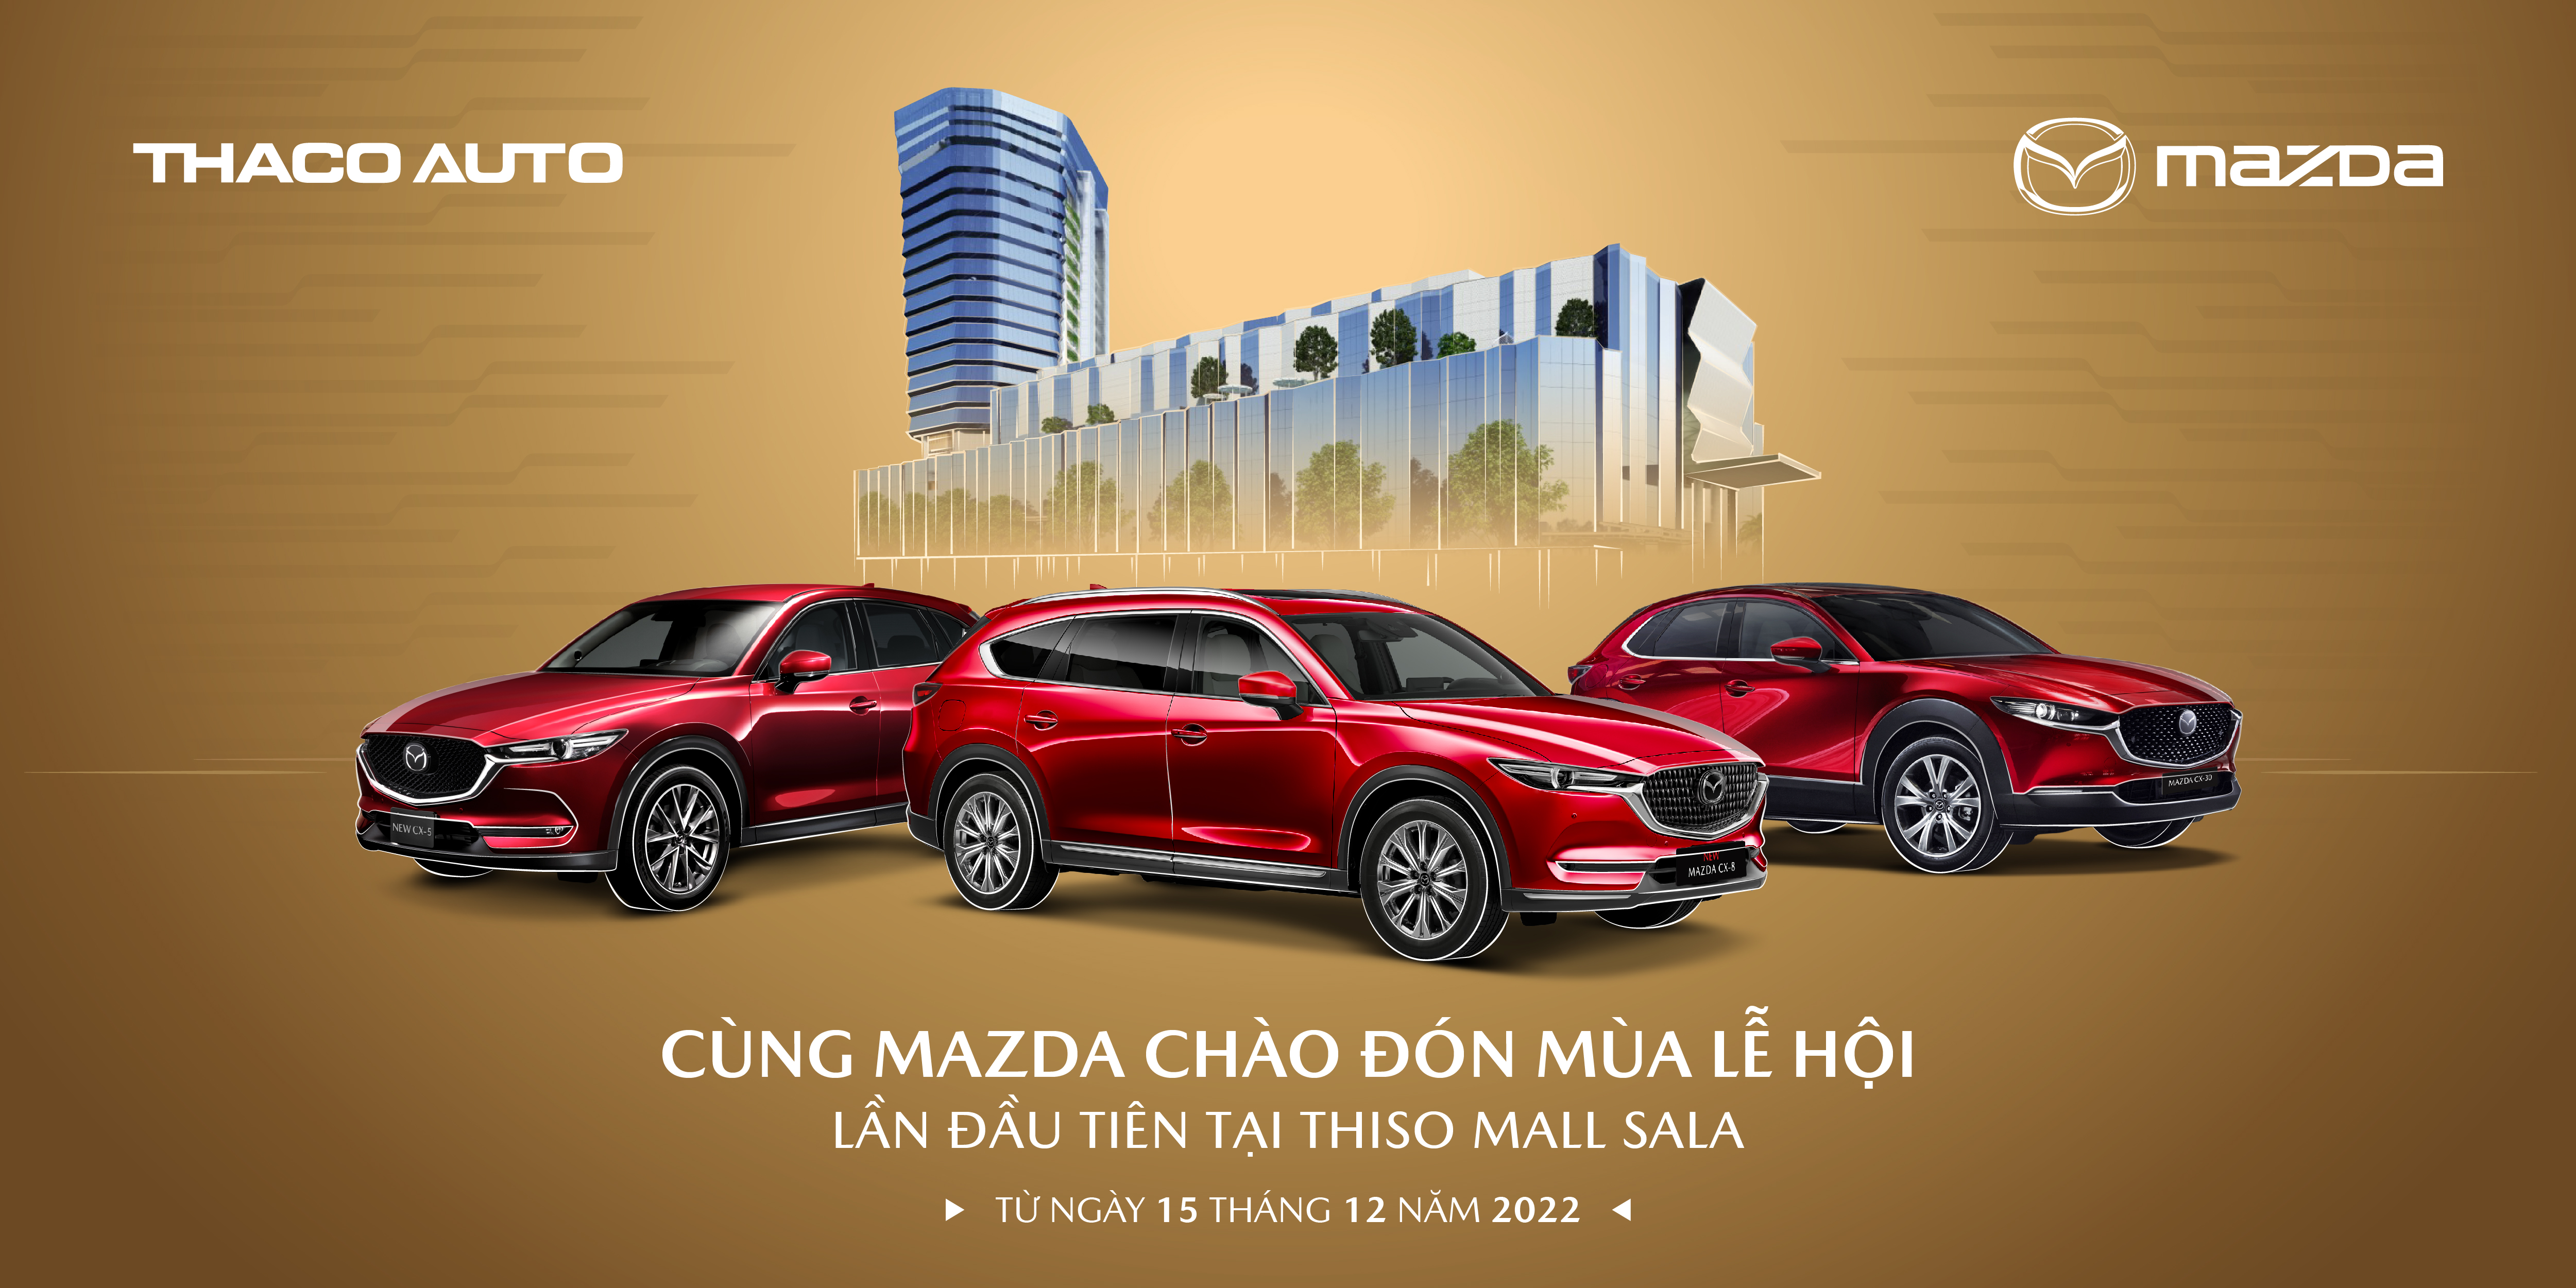 MAZDA CHÍNH THỨC KHỞI ĐỘNG SỰ KIỆN TRƯNG BÀY XE TẠI THISO MALL: Bạn đang tìm kiếm một chiếc xe mới cho mùa đông năm 2024? Hãy đến tham dự sự kiện trưng bày xe Mazda mới nhất tại Thiso Mall. Đây là cơ hội để bạn chiêm ngưỡng và trải nghiệm các dòng xe Mazda chất lượng cao và tiên tiến nhất tại Việt Nam. Chắc chắn sẽ không làm bạn thất vọng!